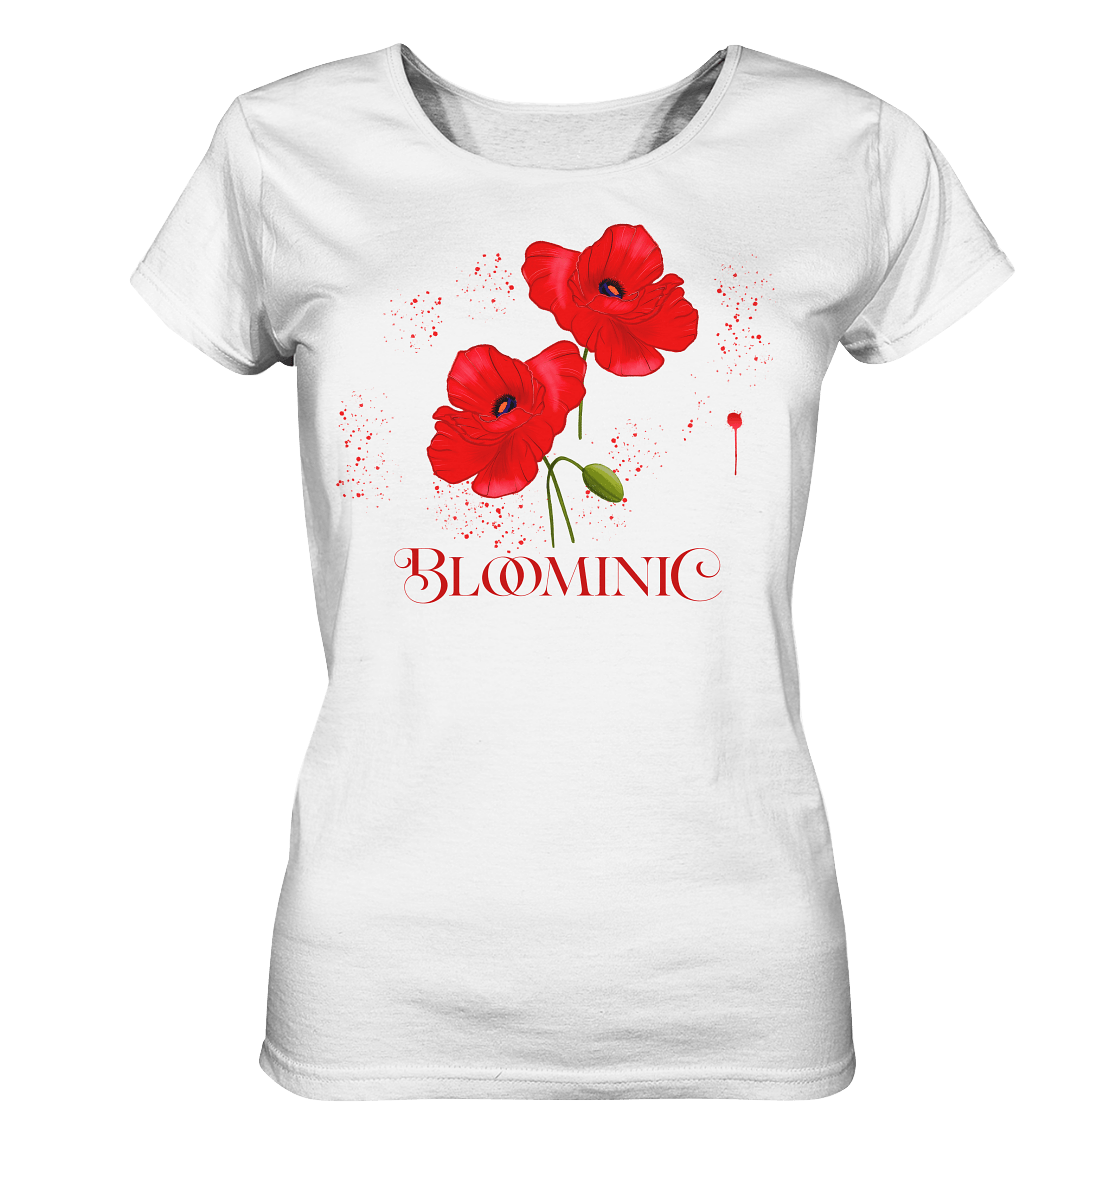 Mohnblumen-Damen-T-Shirt-in-weiss-mit-roten-handgezeichneten-FloraleMuster-Mohnblumen-Shirt-Bloominic